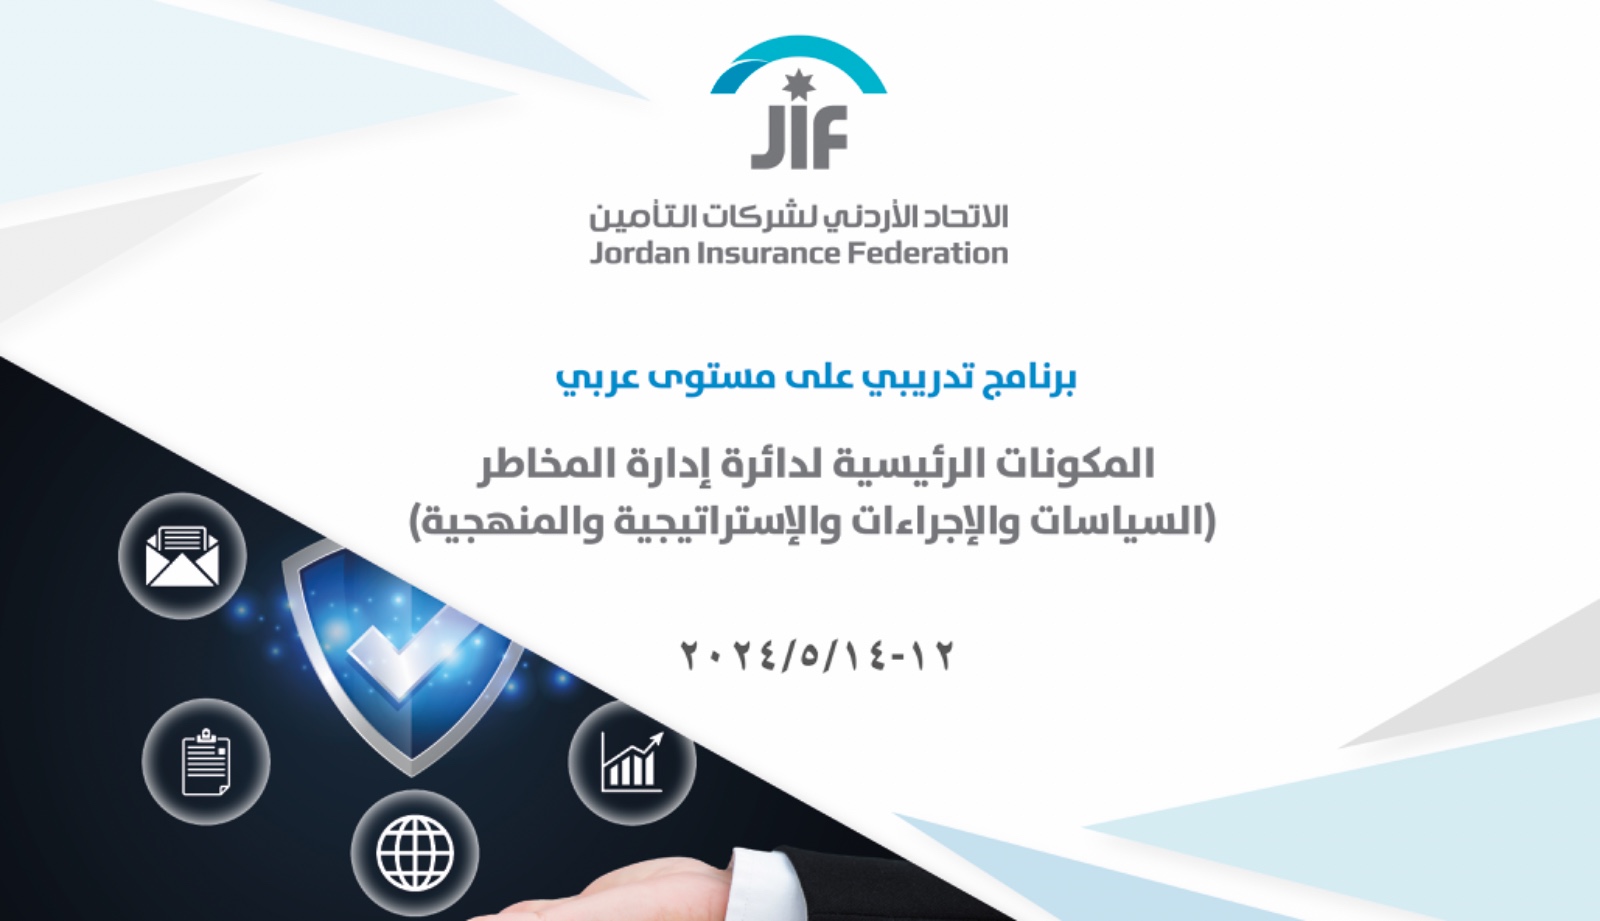 الاتحاد الأردني لشركات التأمين يطلق برنامجه التدريبي الثالث حول إدارة المخاطر في عالم التأمين